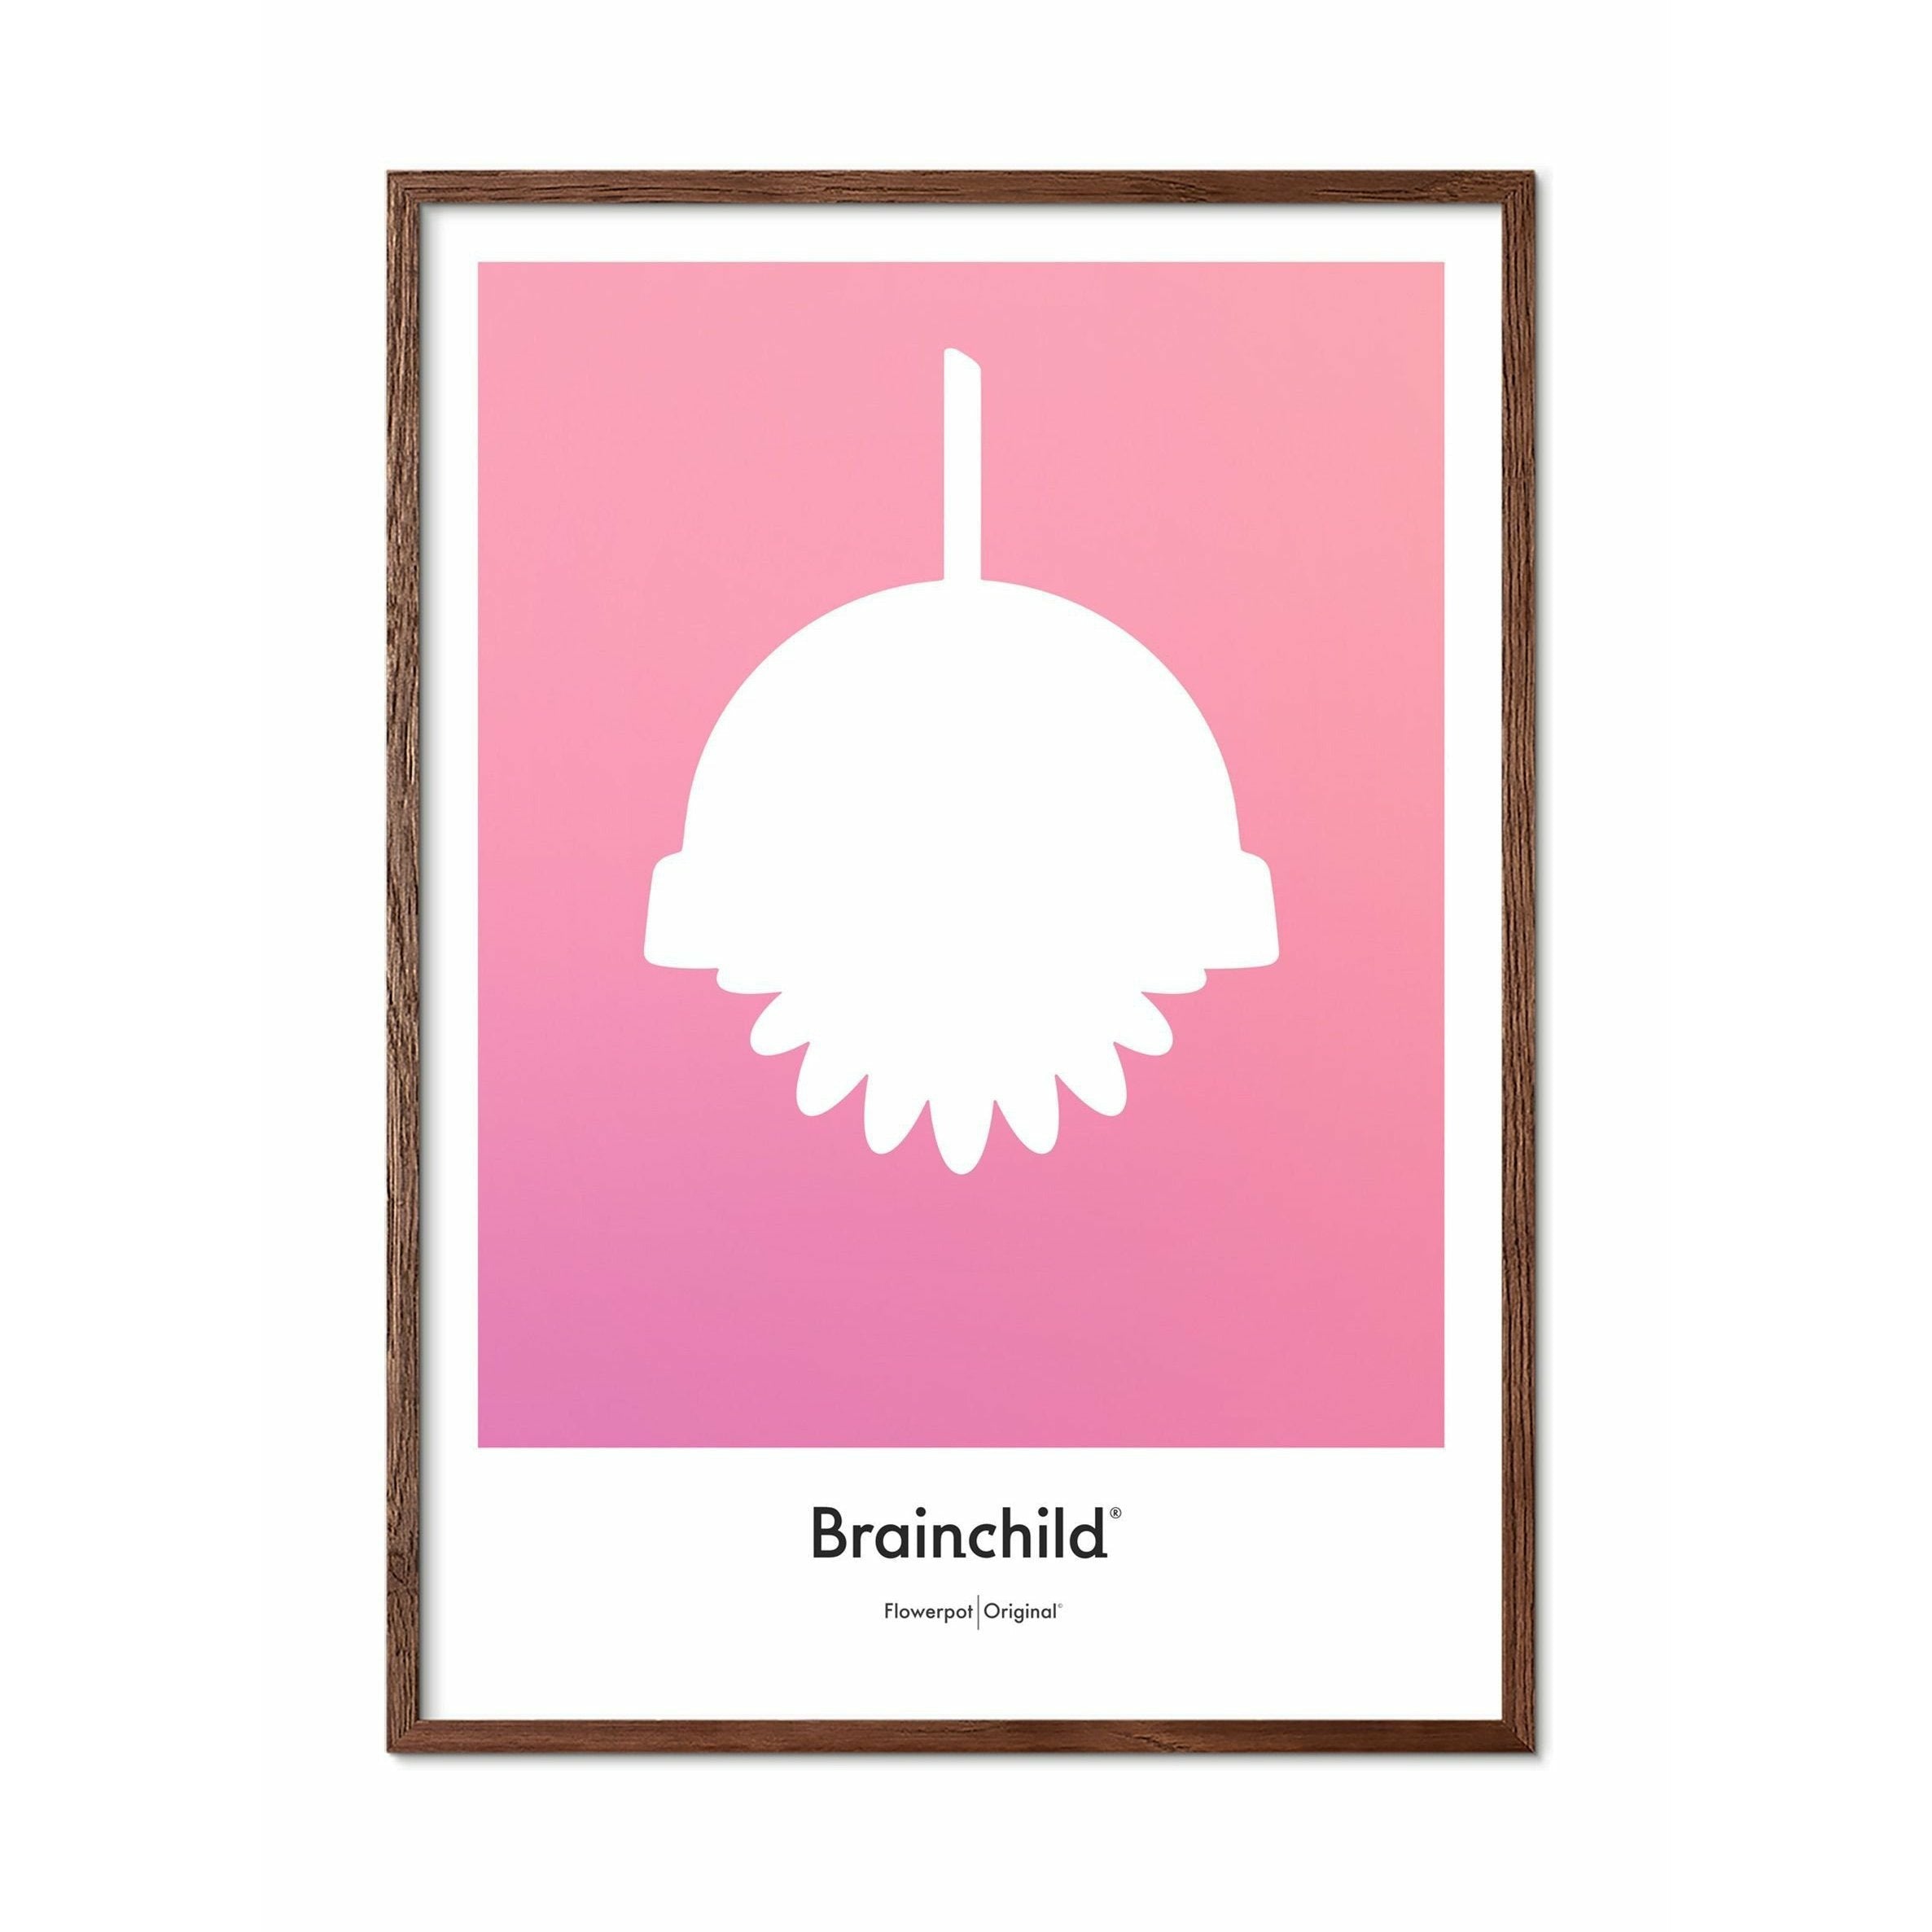 Brainchild Flowerpot Design Icon Poster, Frame Made Of Dark Wood 70 X100 Cm, Pink